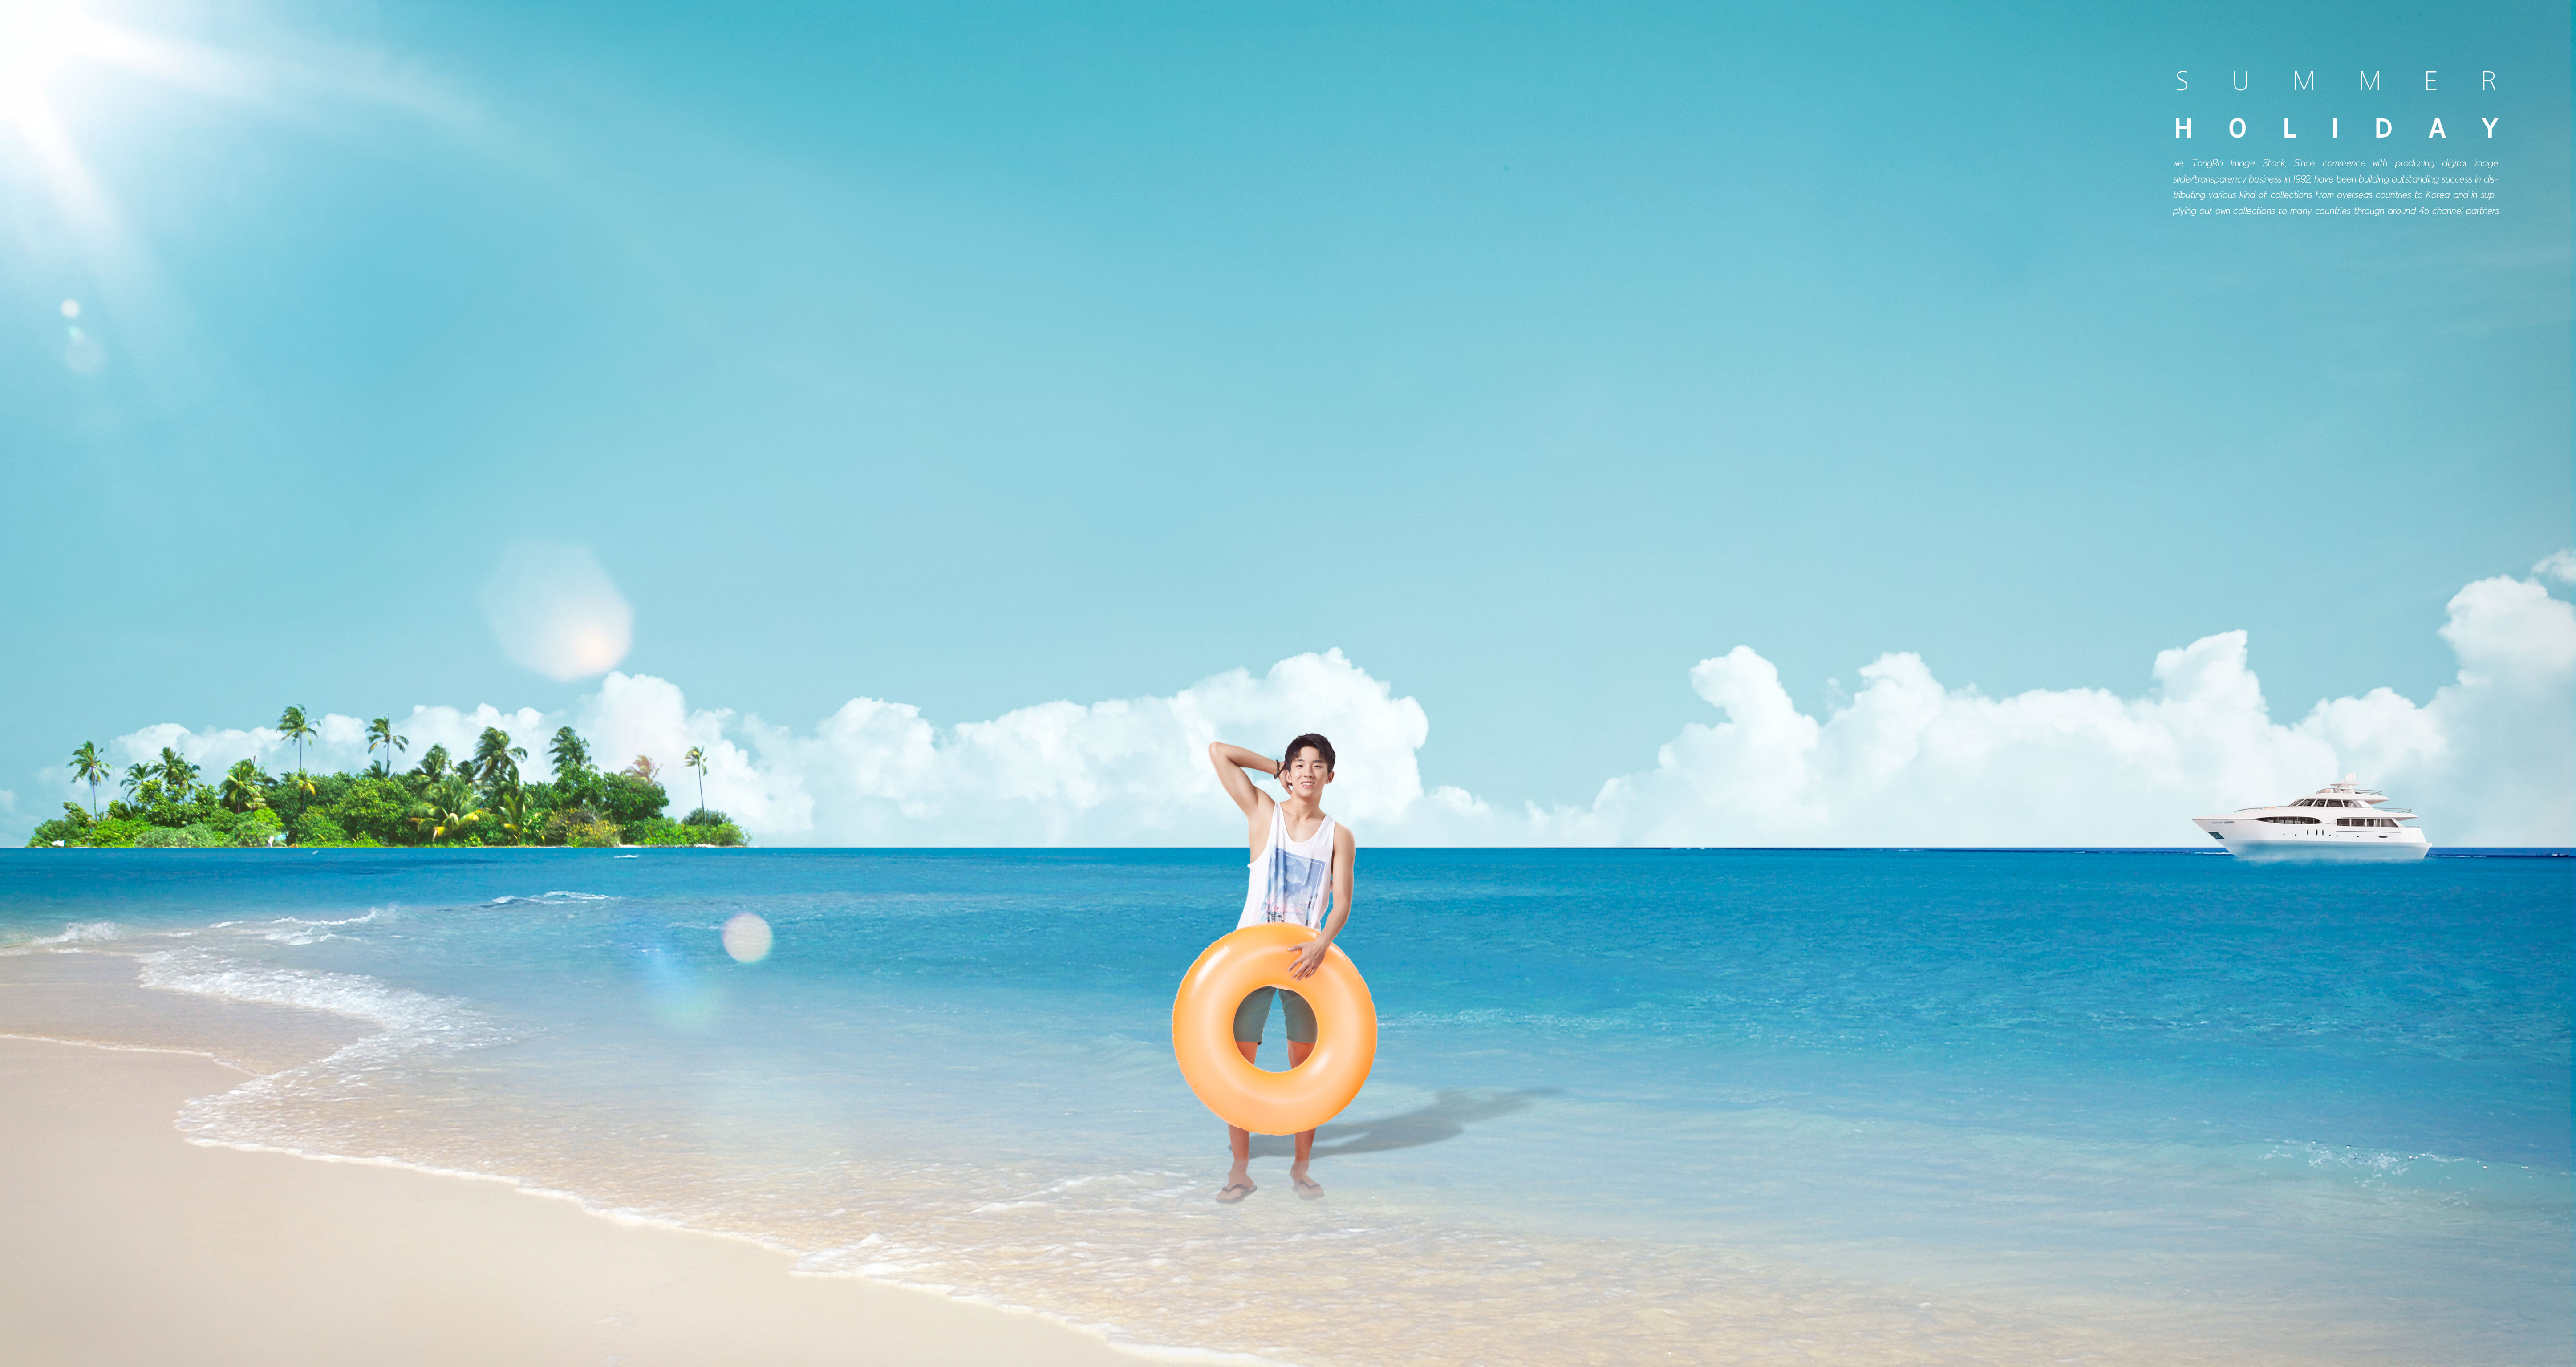 夏季暑假海滩旅行活动广告海报设计模板插图(1)